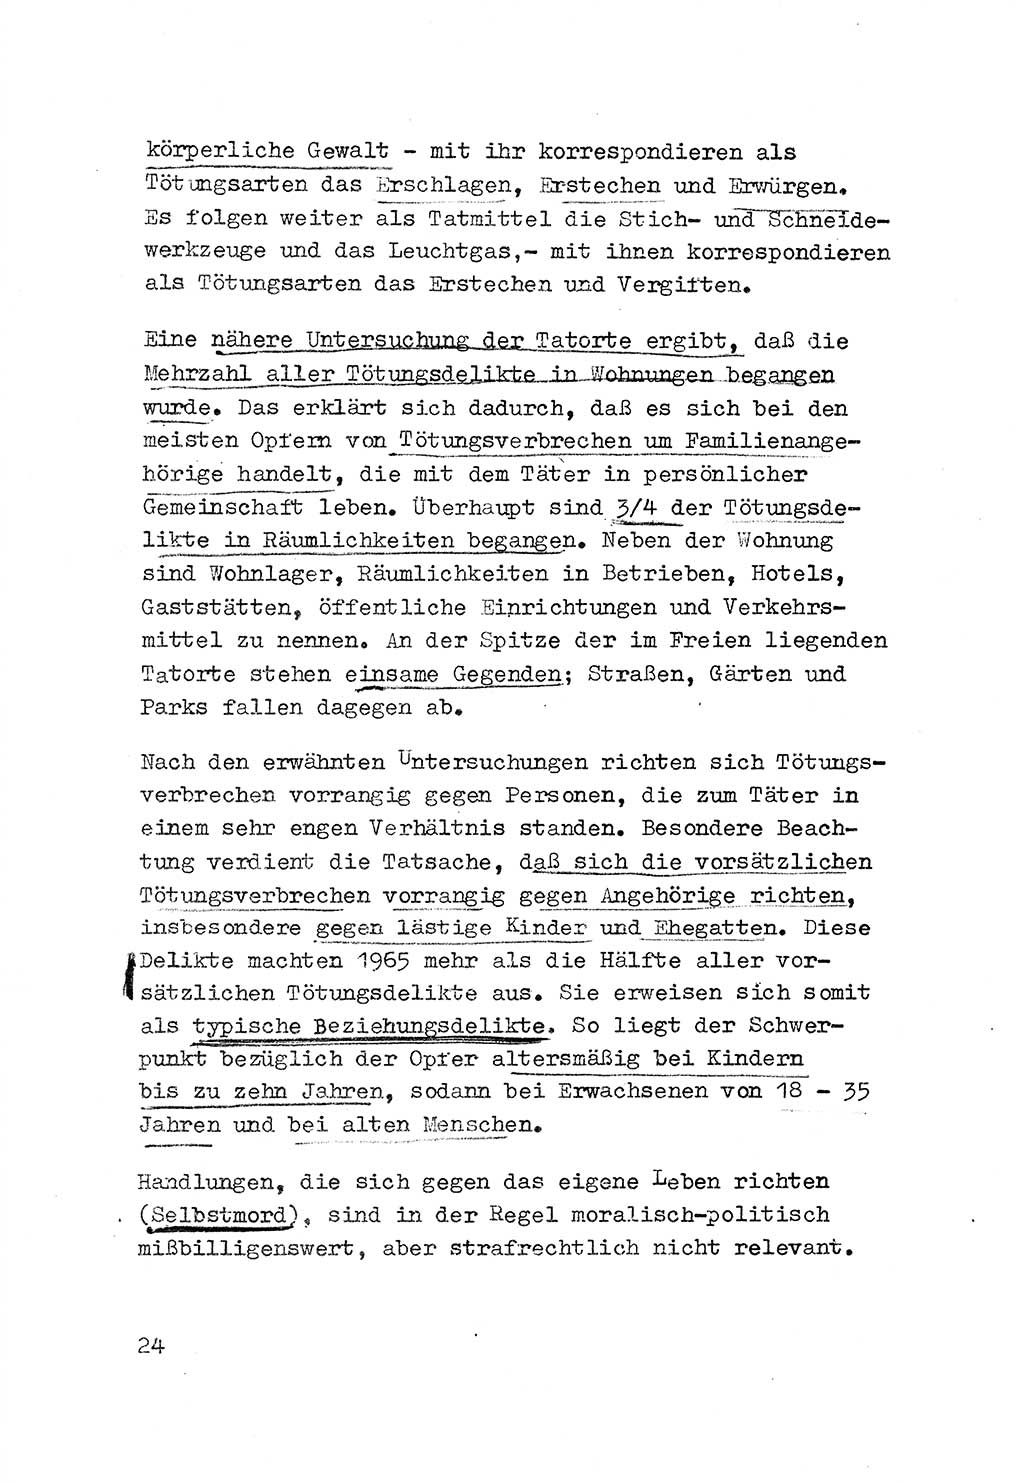 Strafrecht der DDR (Deutsche Demokratische Republik), Besonderer Teil, Lehrmaterial, Heft 3 1969, Seite 24 (Strafr. DDR BT Lehrmat. H. 3 1969, S. 24)